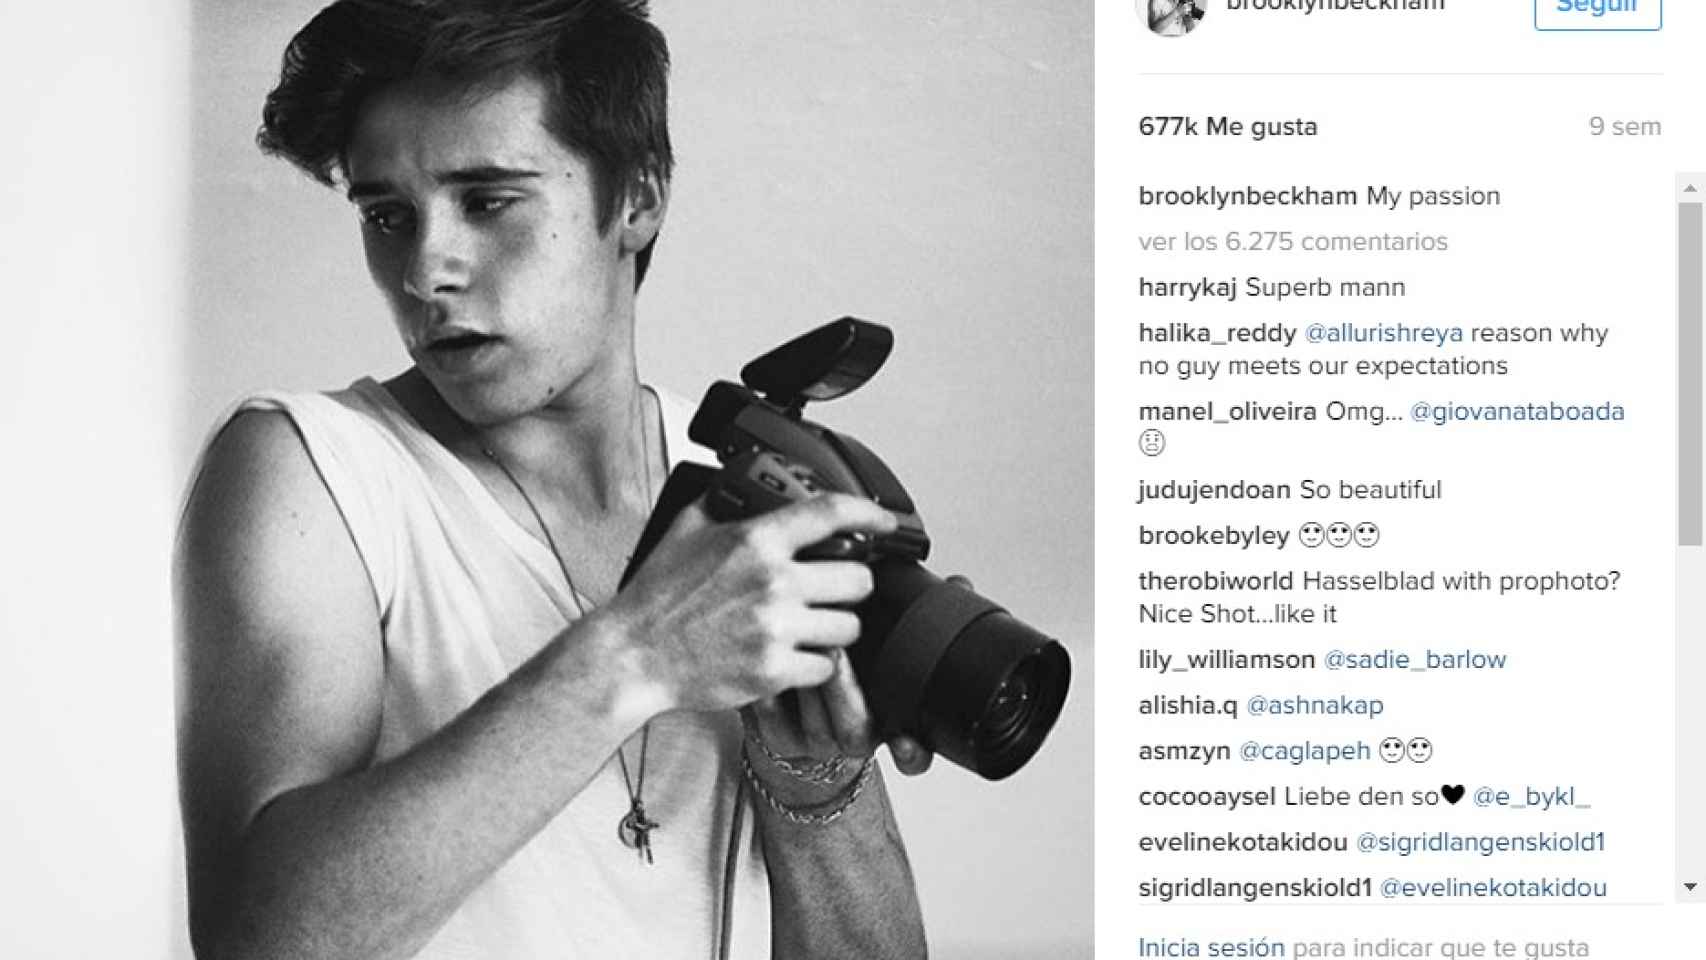 En su Instagram se pueden ver multitud de fotos en las que demuestra su pasión y posa con su cámara.